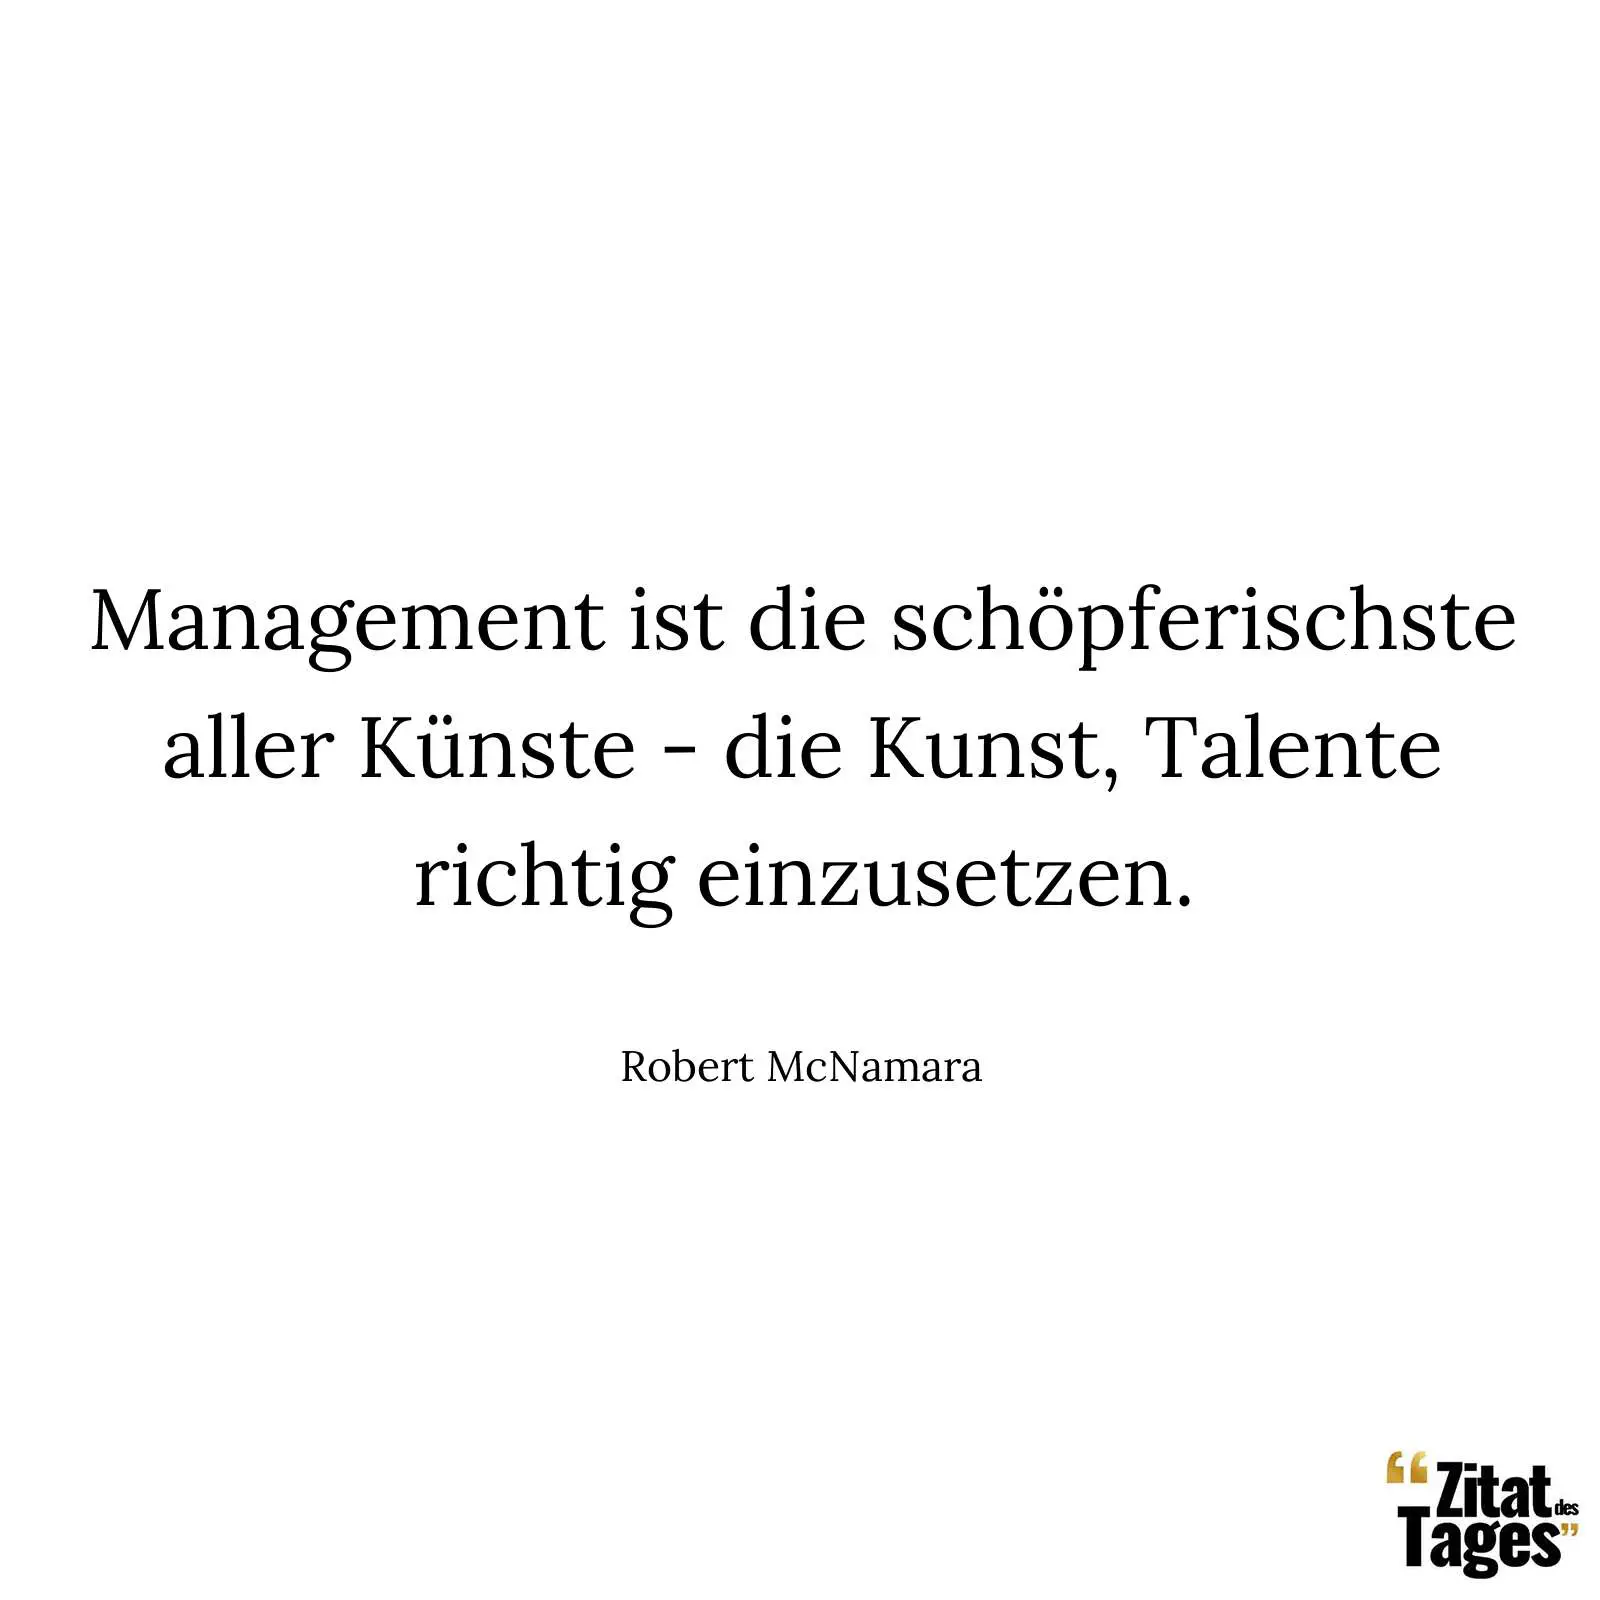 Management ist die schöpferischste aller Künste - die Kunst, Talente richtig einzusetzen. - Robert McNamara